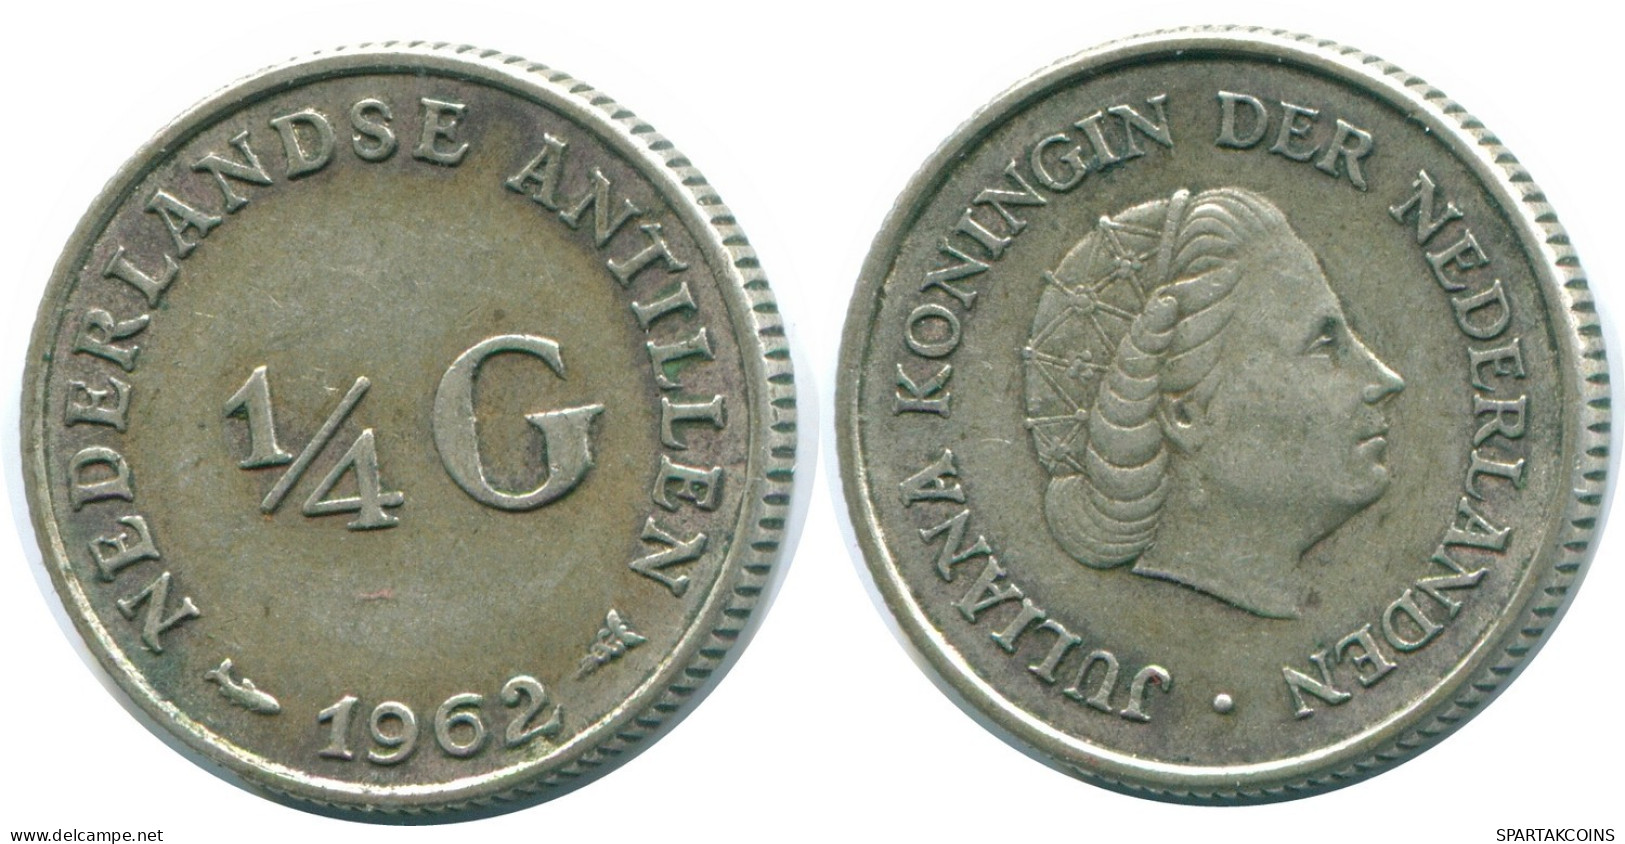 1/4 GULDEN 1962 NIEDERLÄNDISCHE ANTILLEN SILBER Koloniale Münze #NL11156.4.D.A - Niederländische Antillen